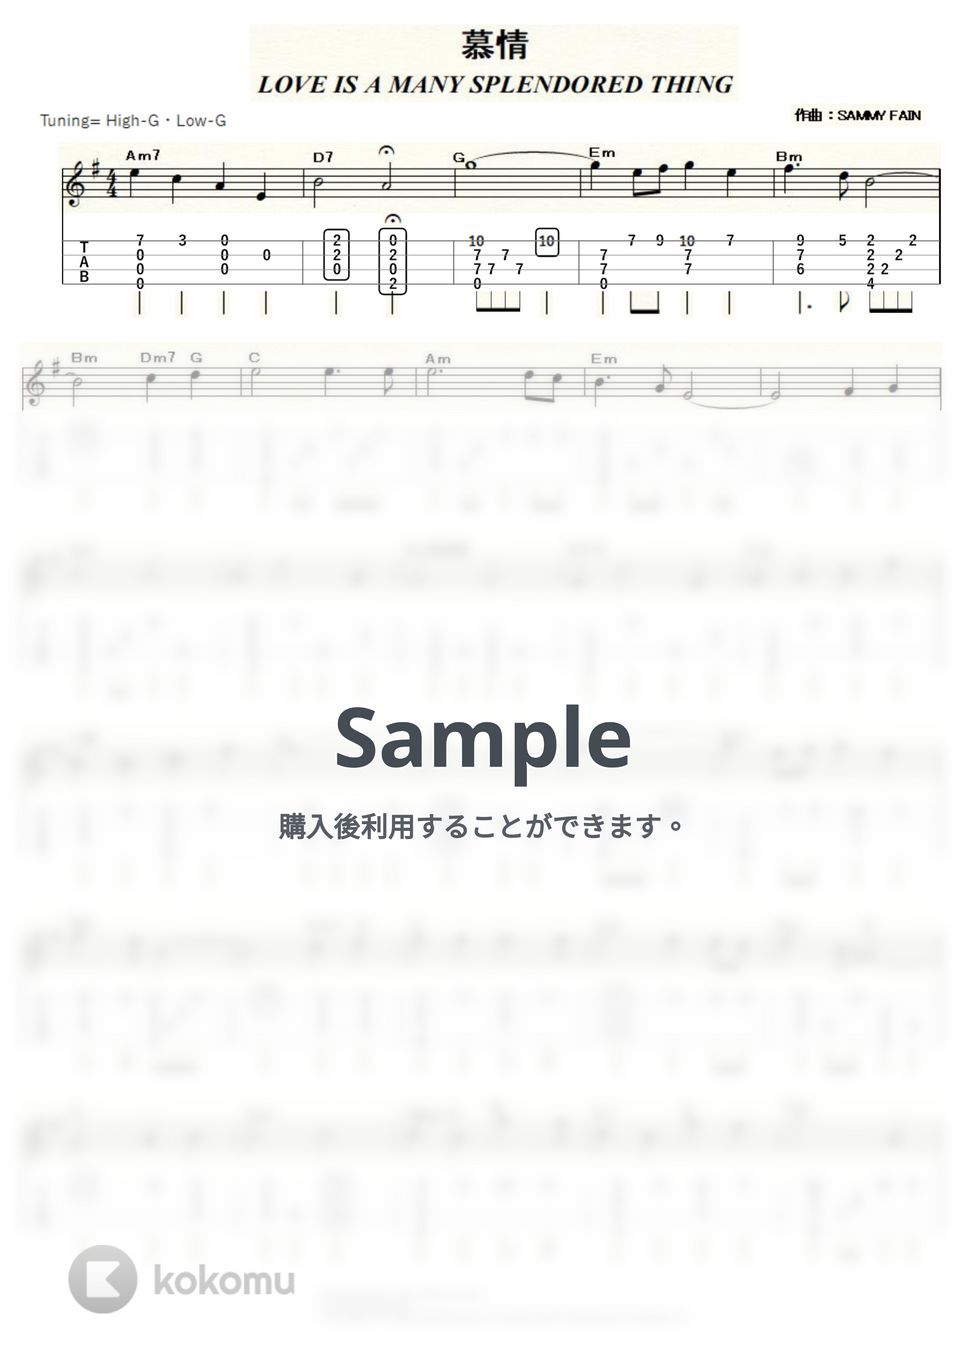 映画『慕情』 - 慕情 (ｳｸﾚﾚｿﾛ / High-G・Low-G / 中級) by ukulelepapa